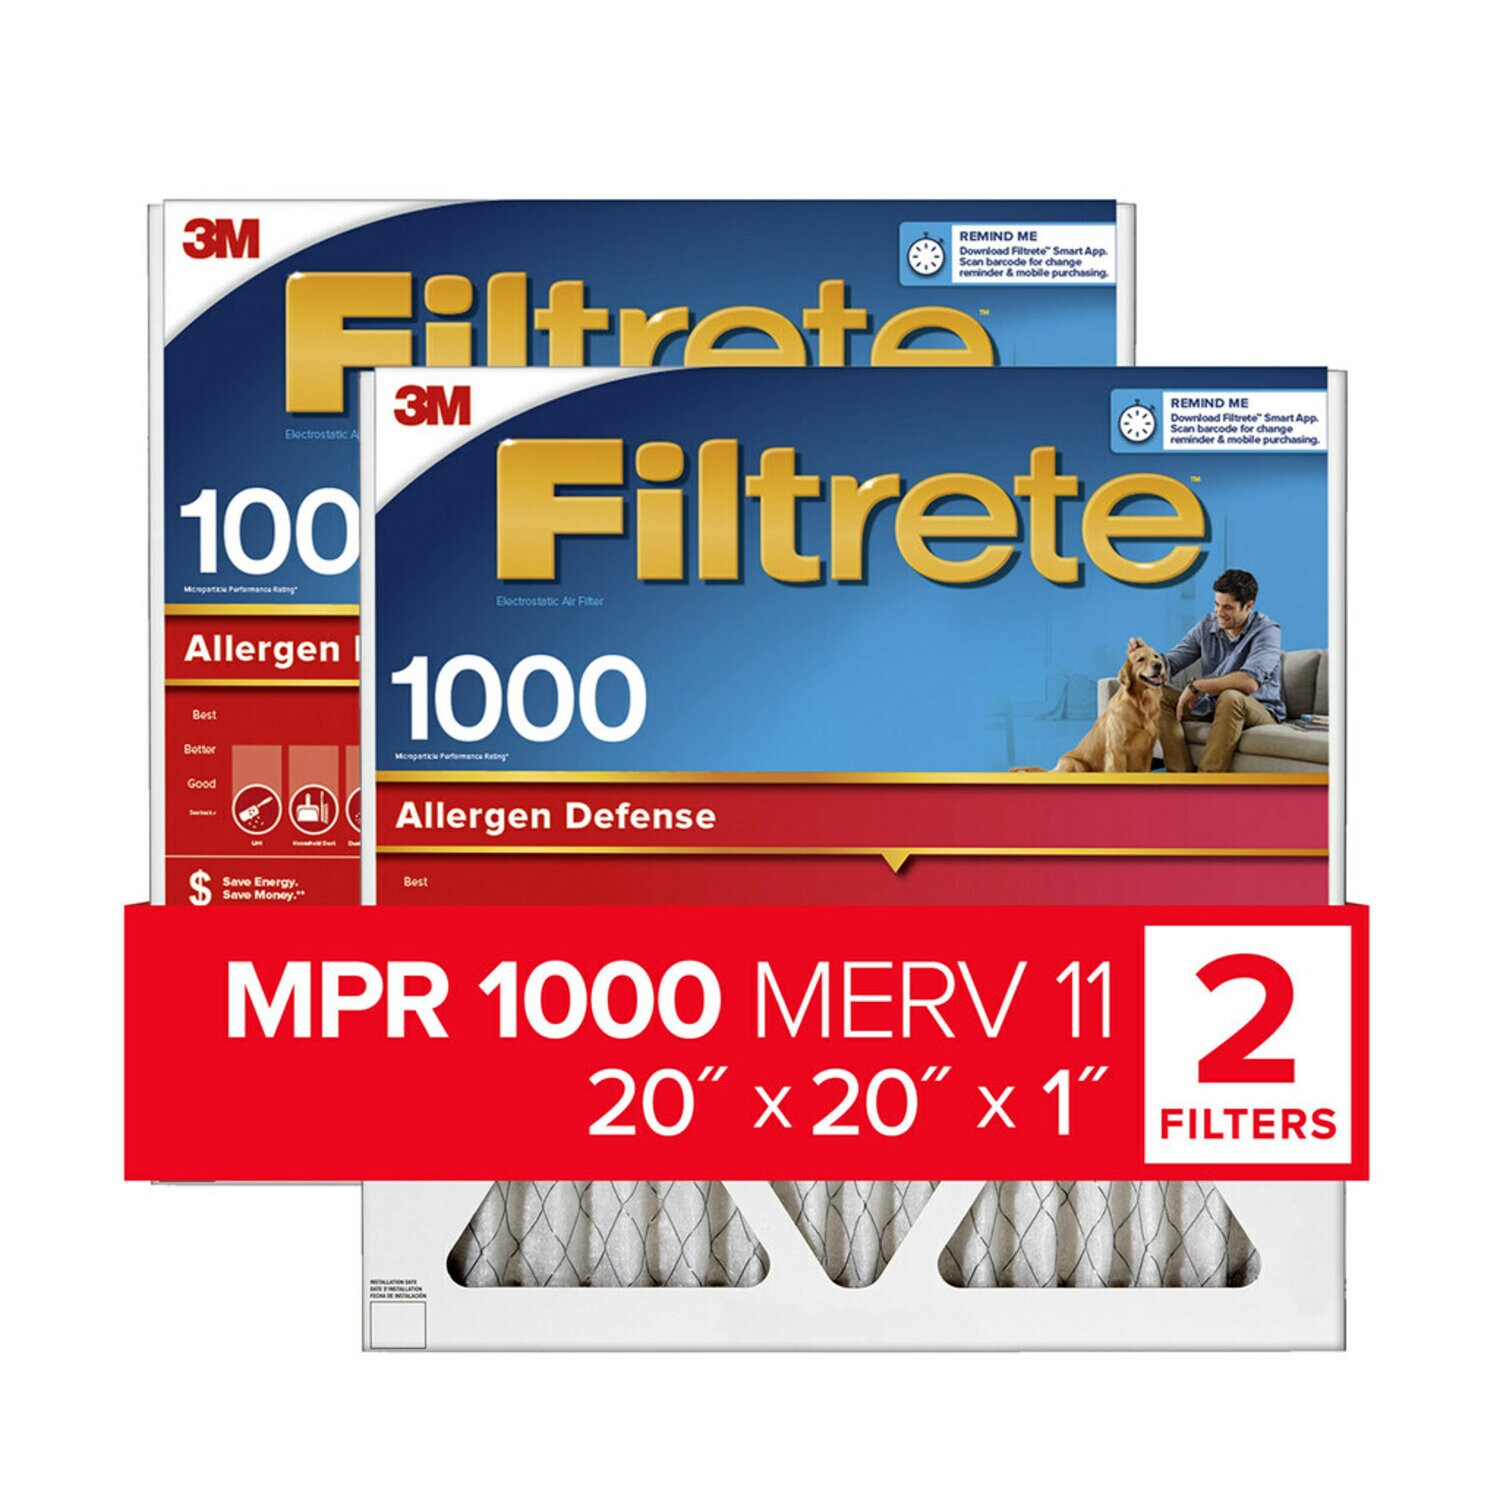 7100188254 - Filtrete Allergen Defense Air Filter, 1000 MPR, 9802-2PK-HDW, 20 in x
20 in x 1 in (50,8 cm x 50,8 cm x 2,5 cm)